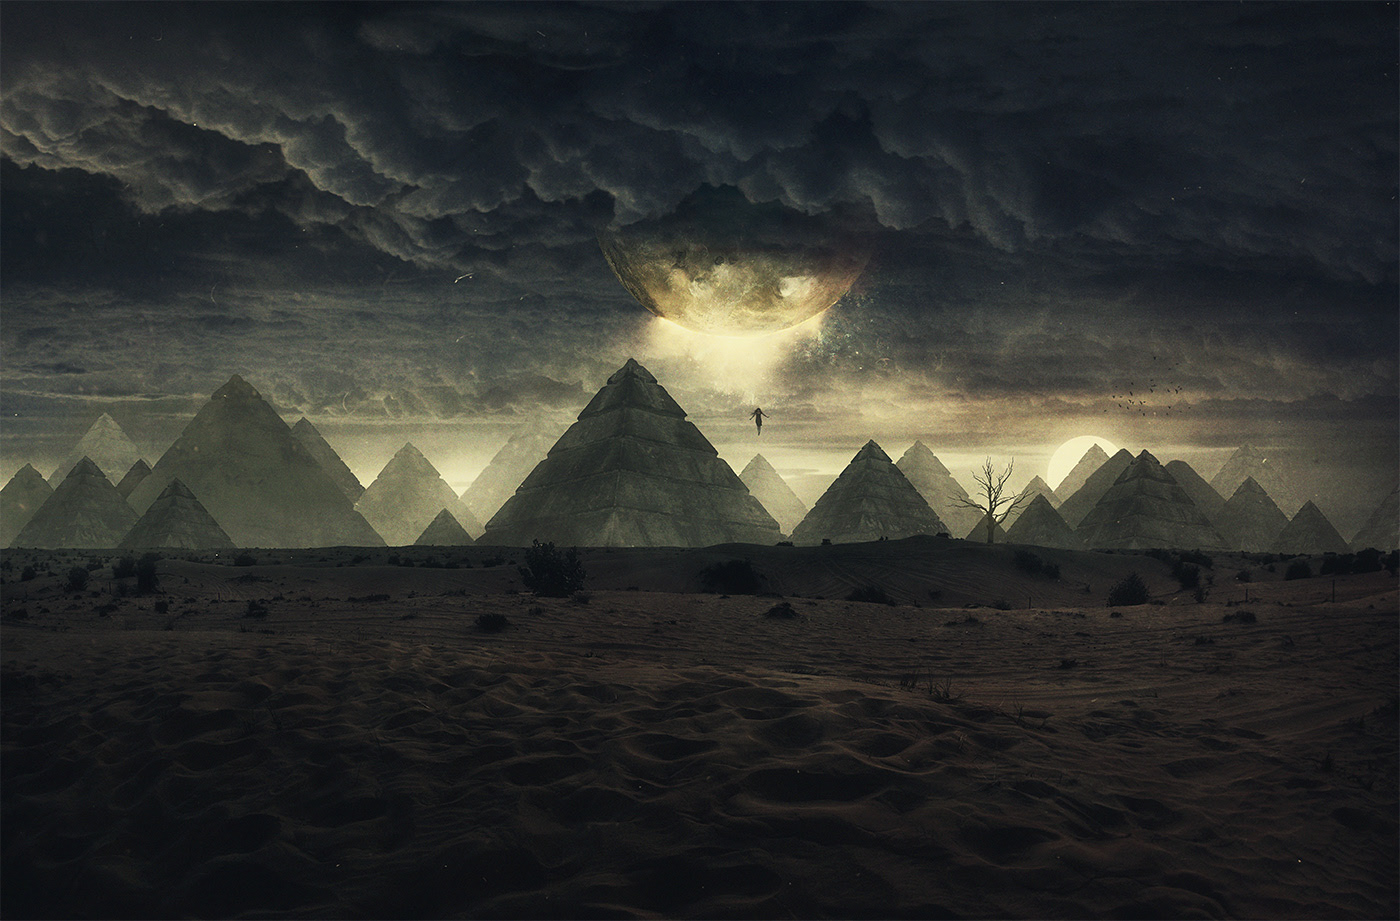 General 1400x921 landscape photoshopped desert surreal fantasy art pyramid photo manipulation